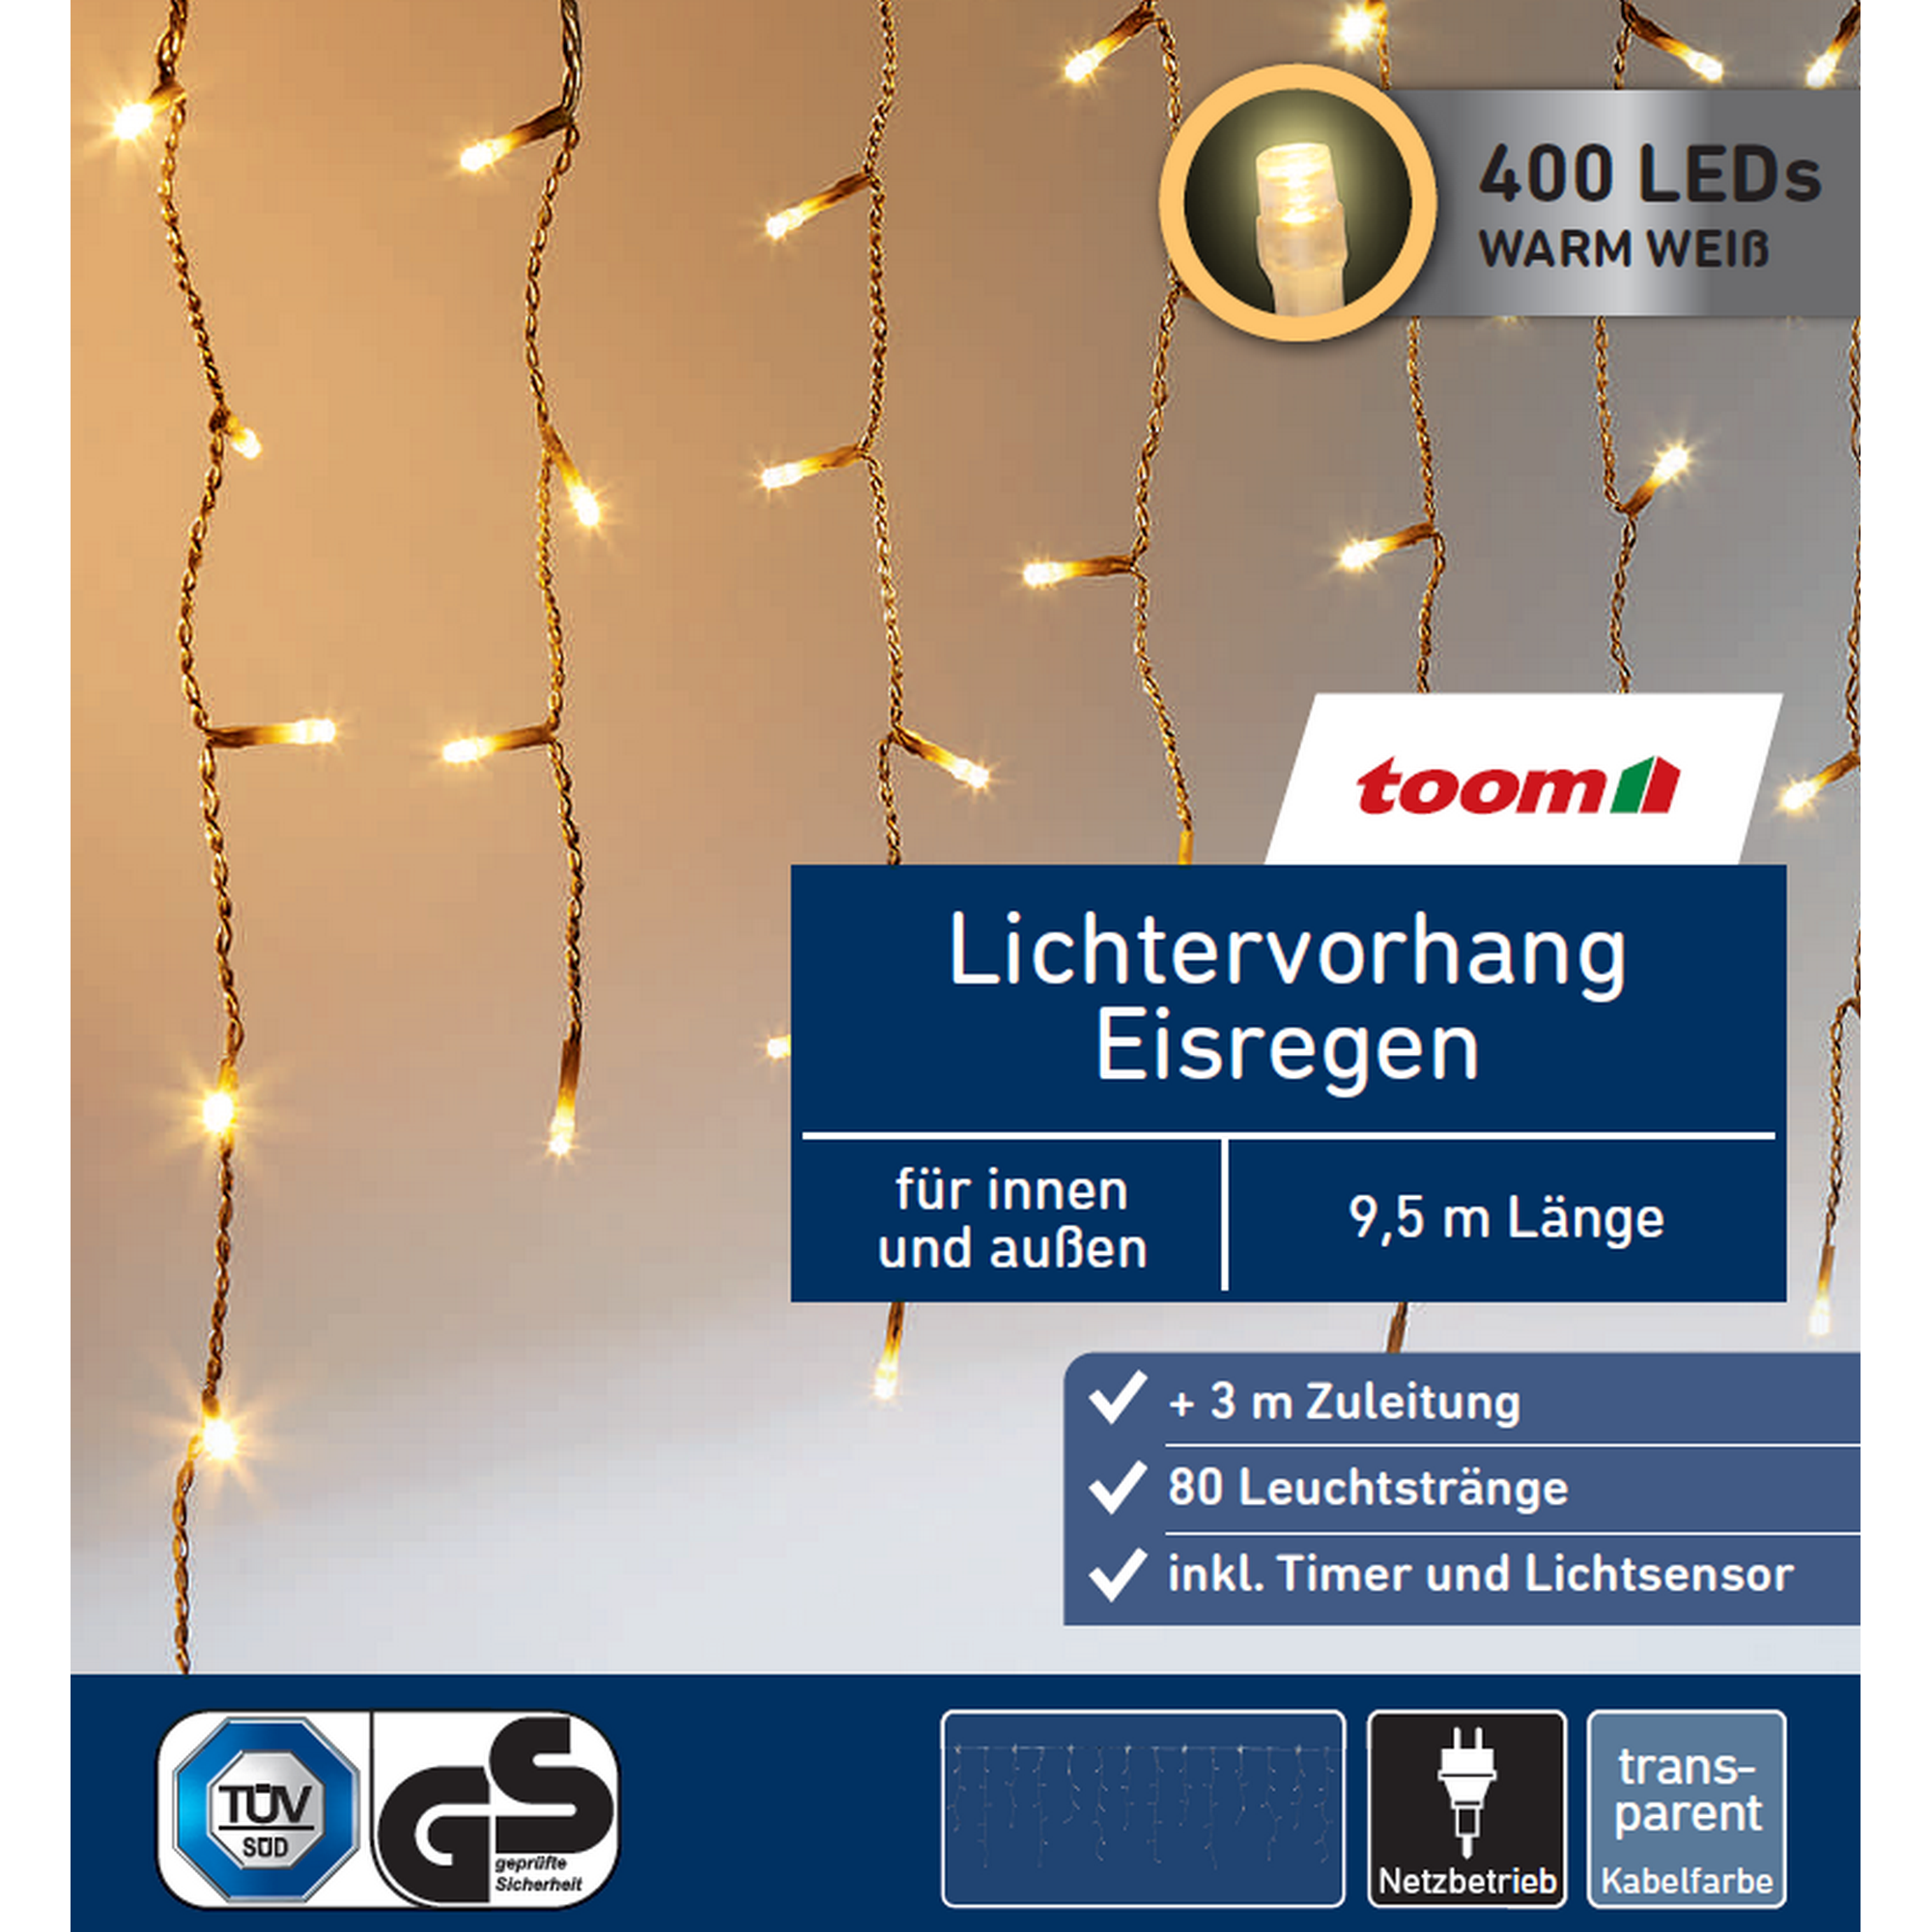 LED-Lichtervorhang 'Eisregen' 400 LEDs warmweiß 80 Stränge 950 cm + product picture